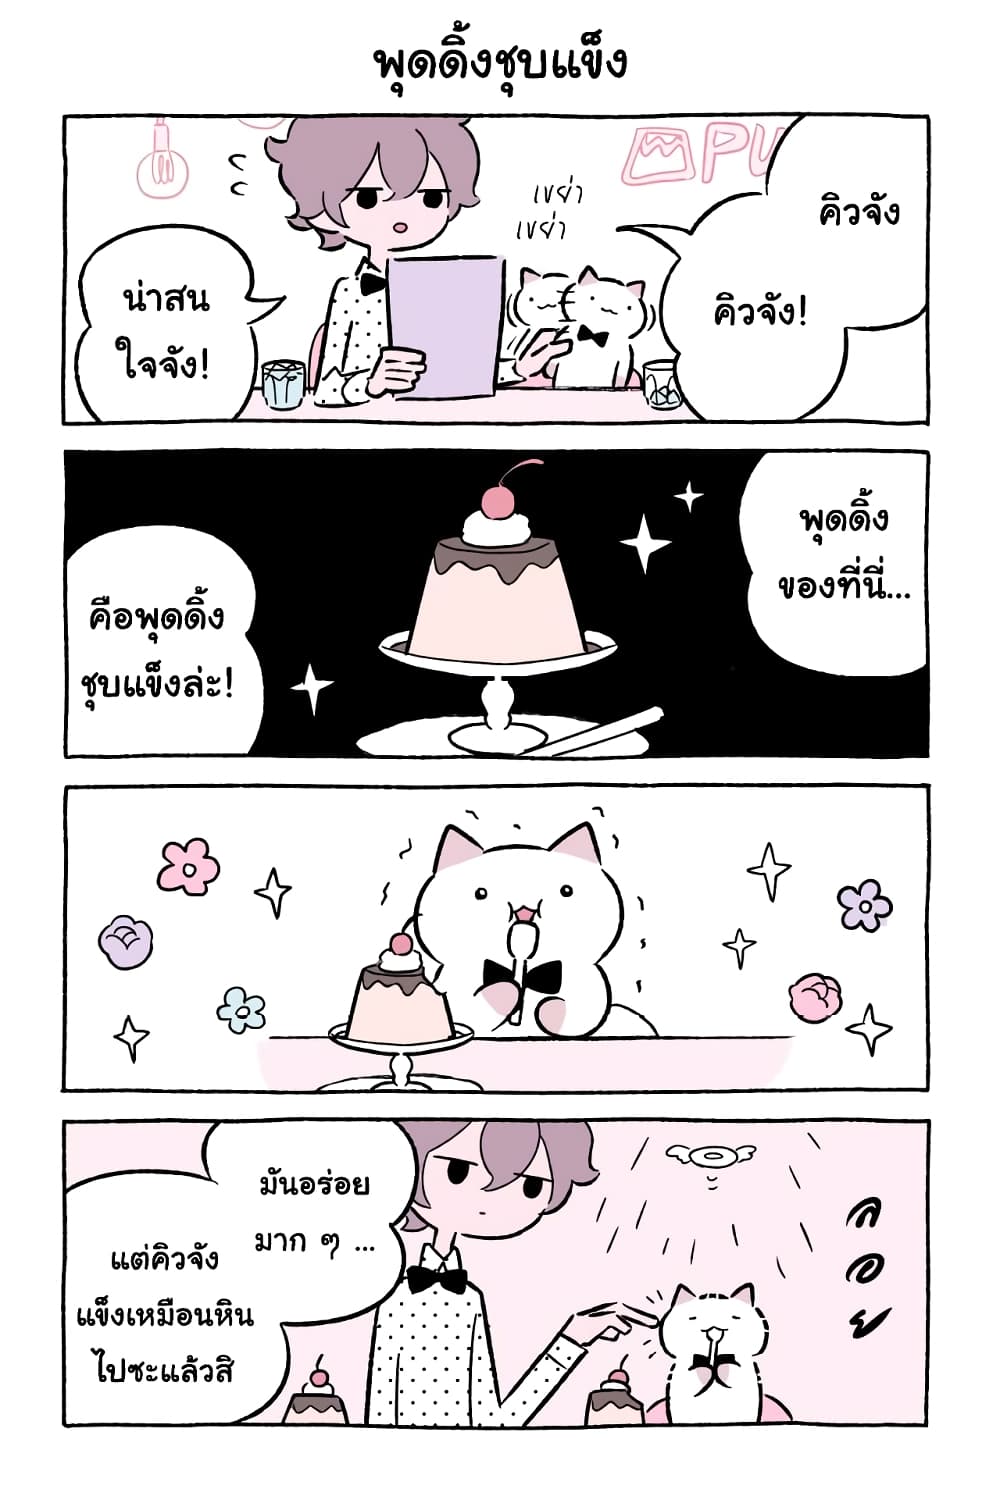 Wonder Cat Kyuu chan คิวจัง แมวมหัศจรรย์ ตอนที่ 47 (6)